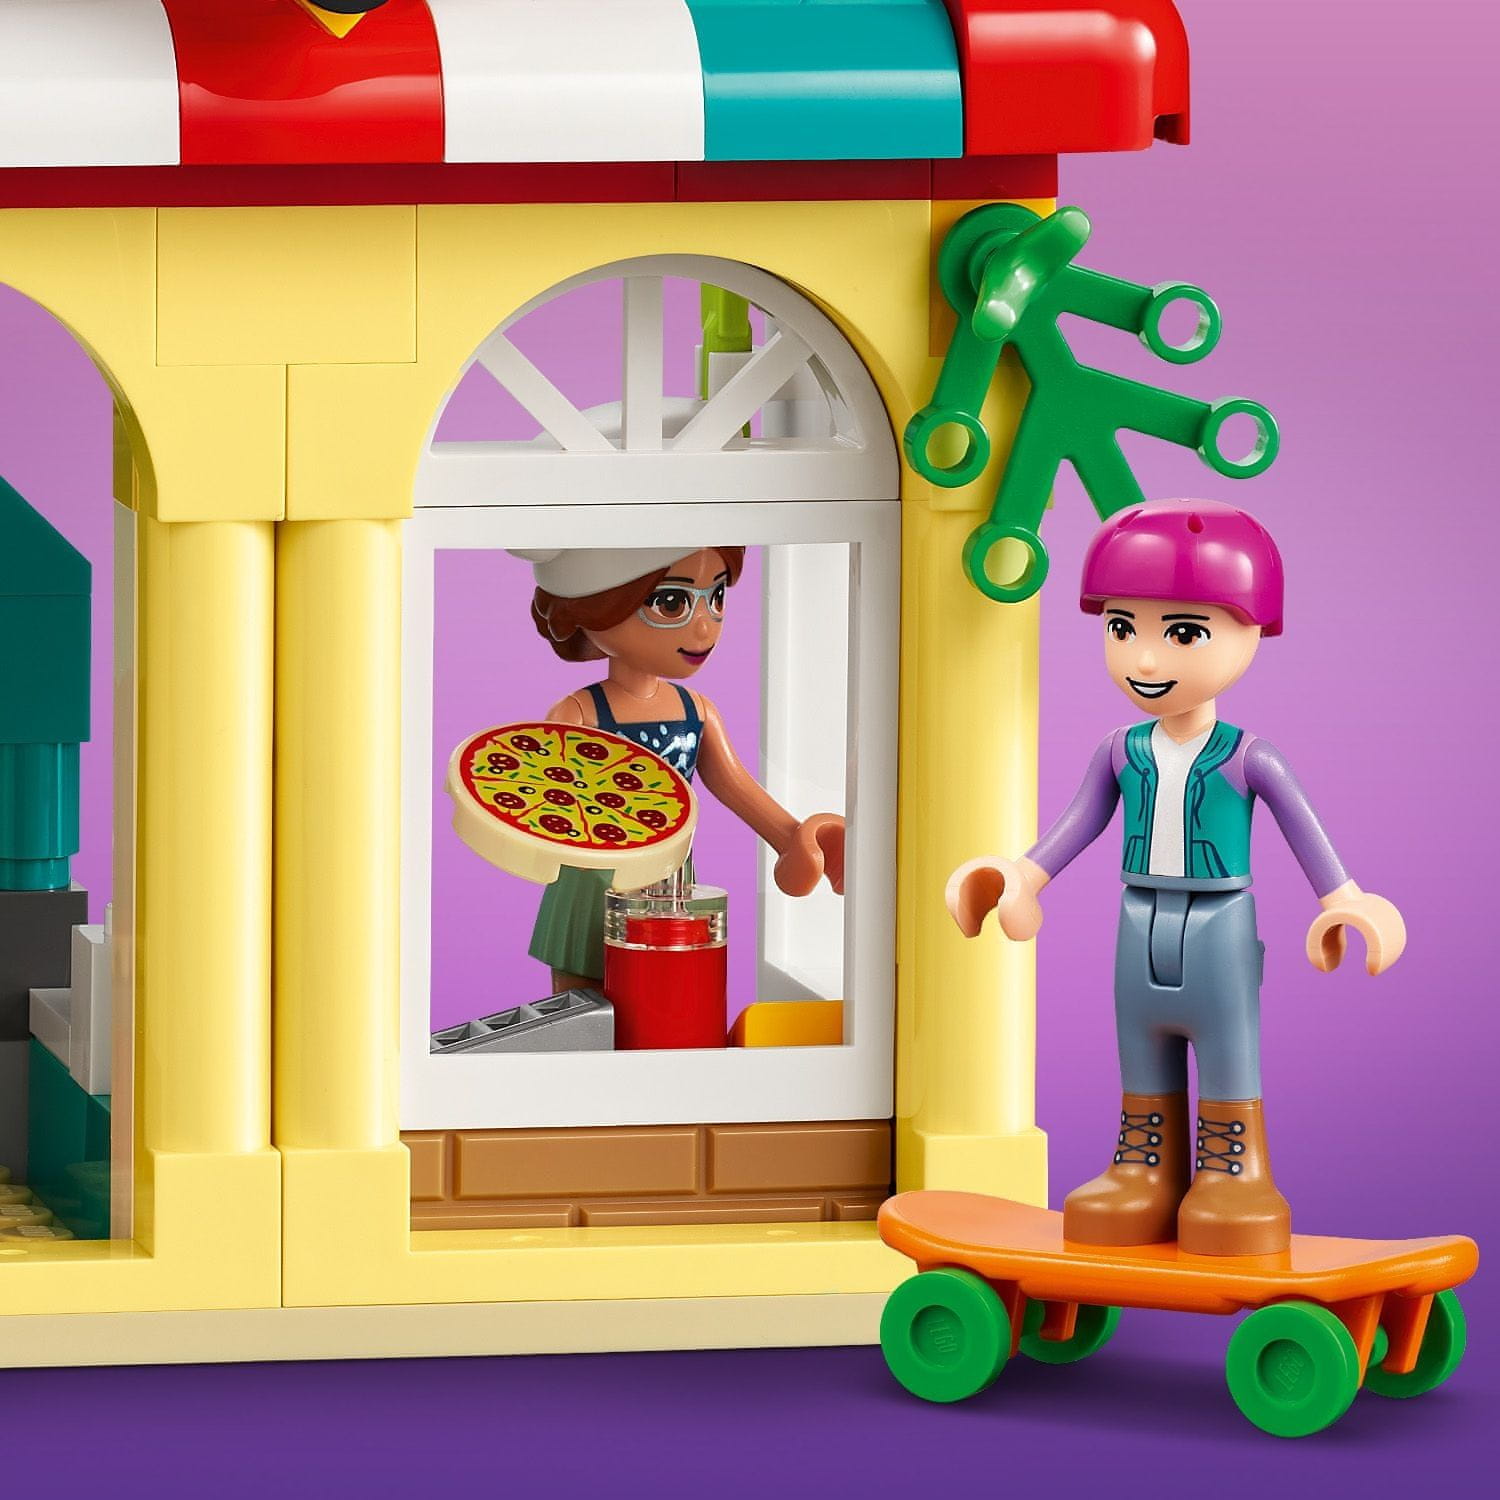 LEGO Friends 41705 Pizzerie v městečku Heartlake